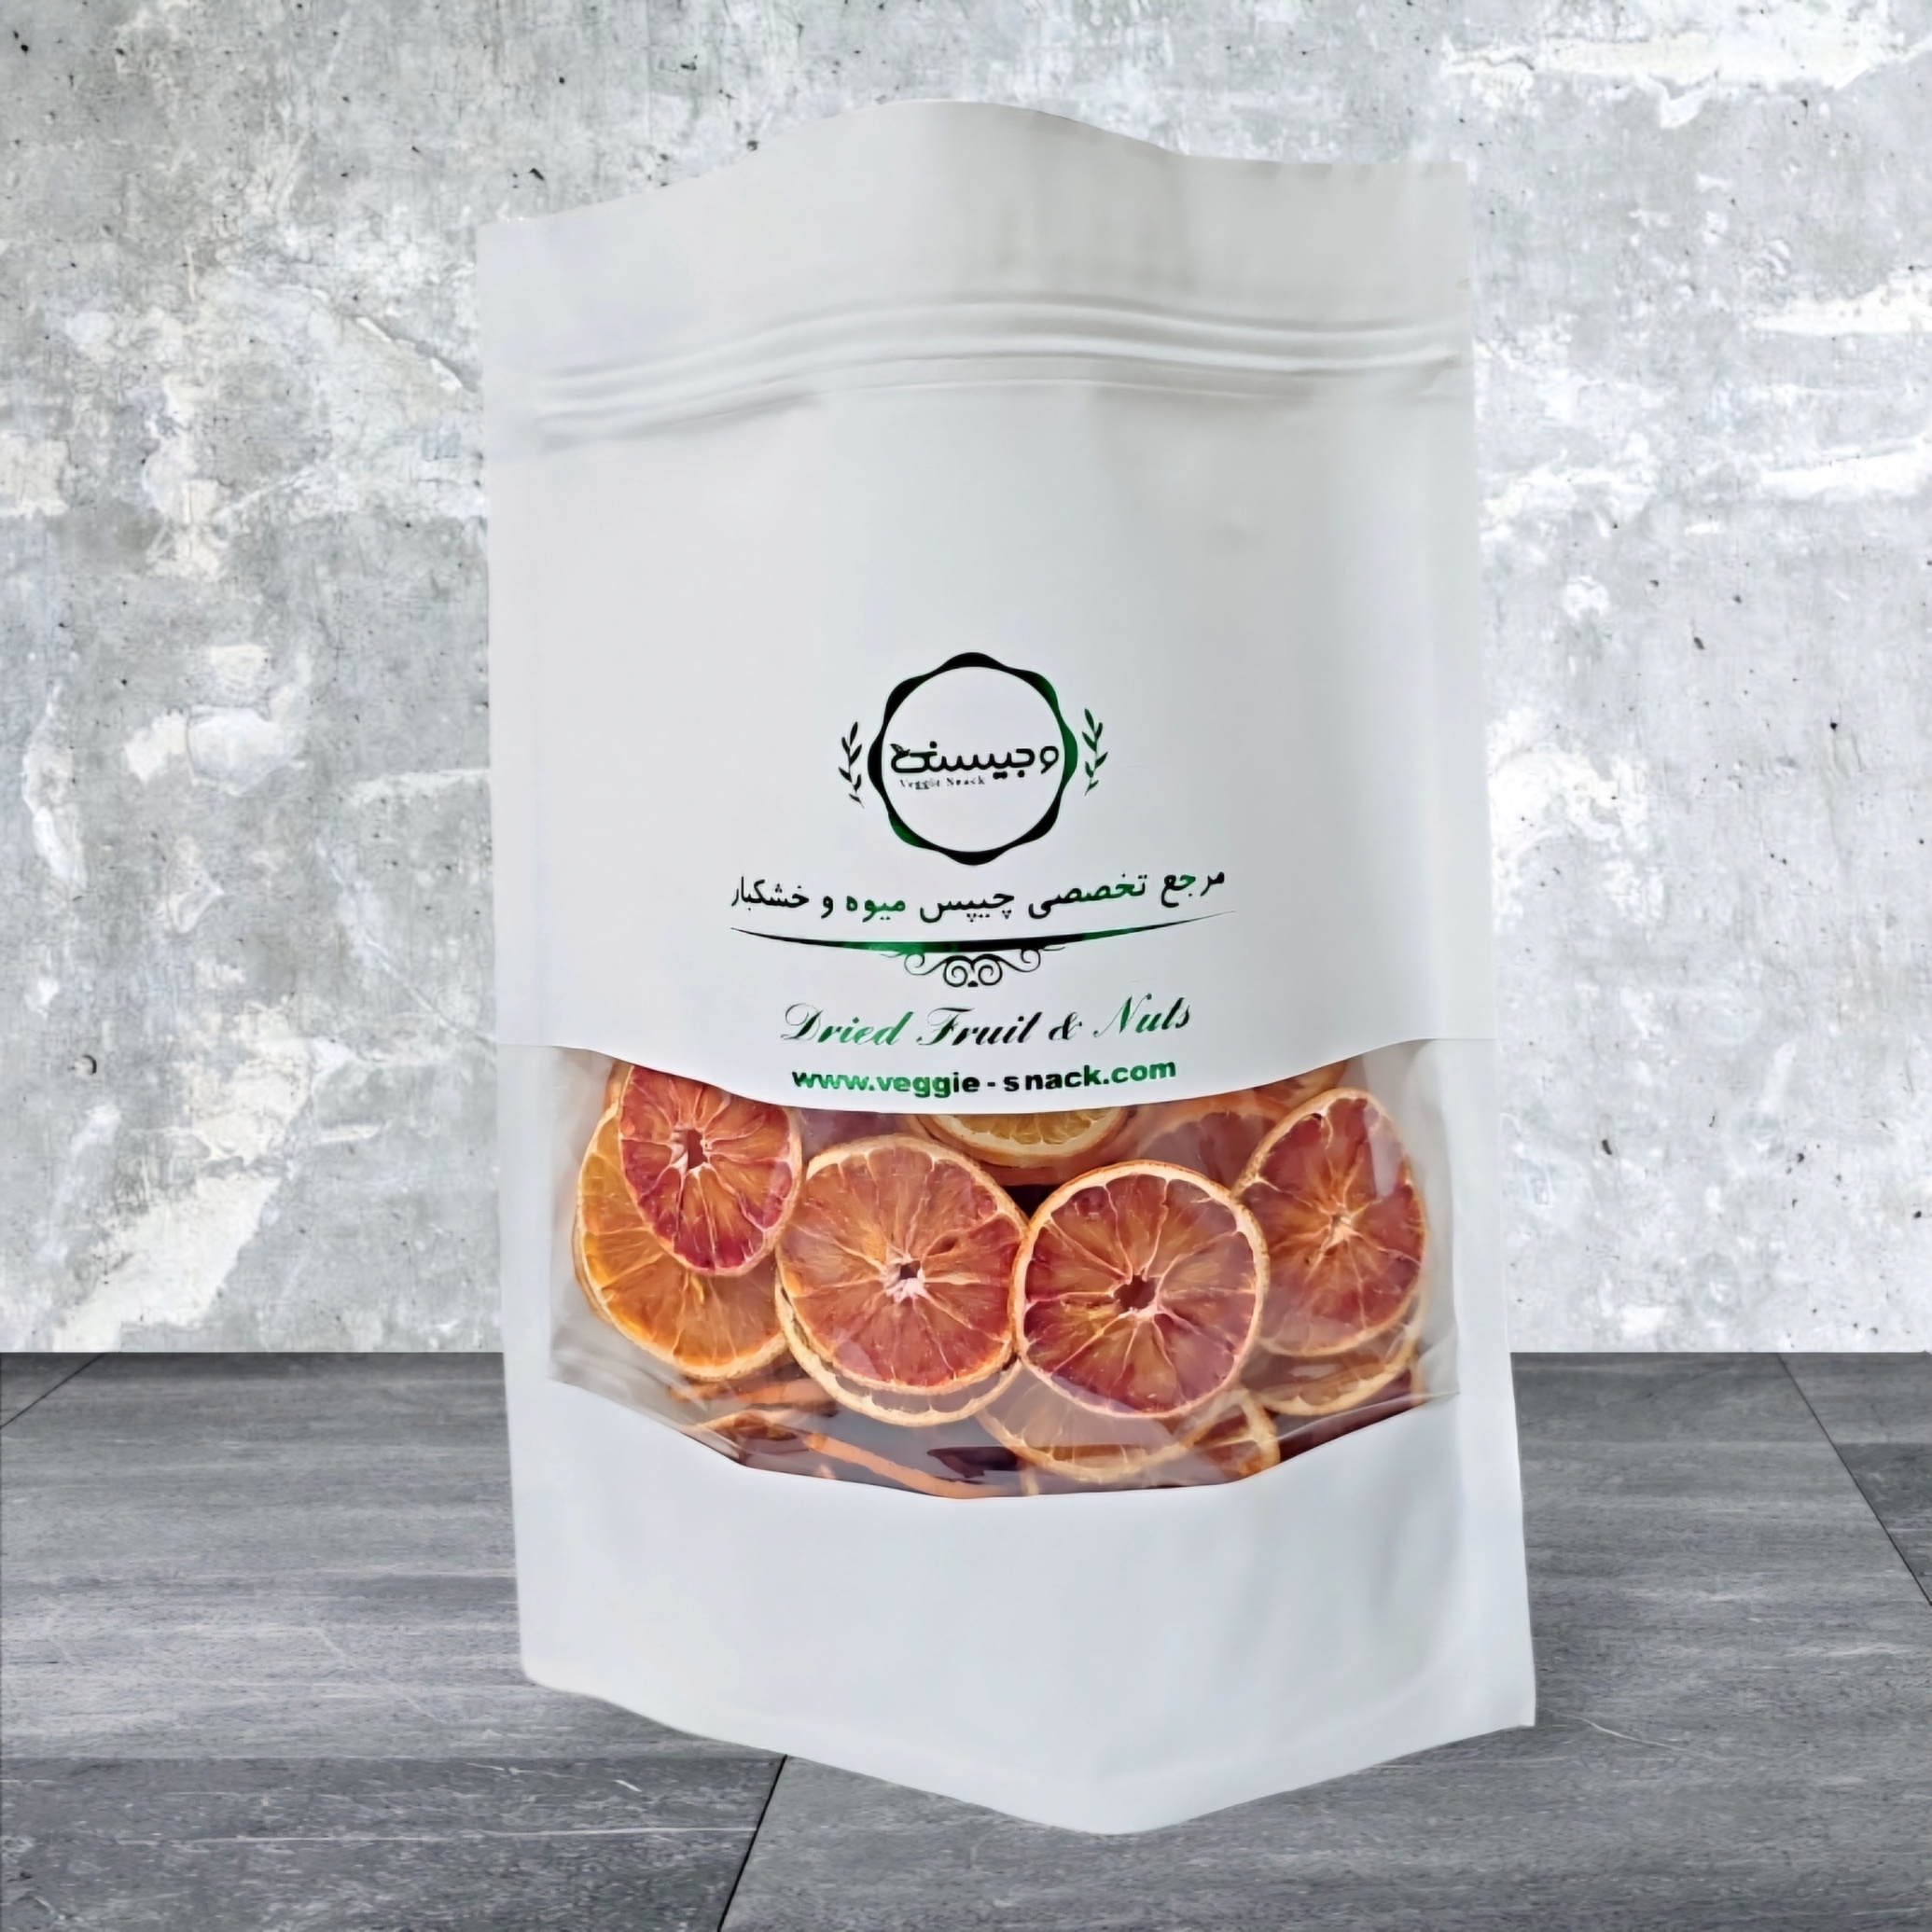  میوه خشک پرتقال توسرخ قیمت عمده میوه خشک ایرانی و حبه استوایی 1403 وجیسنک کارخانه 